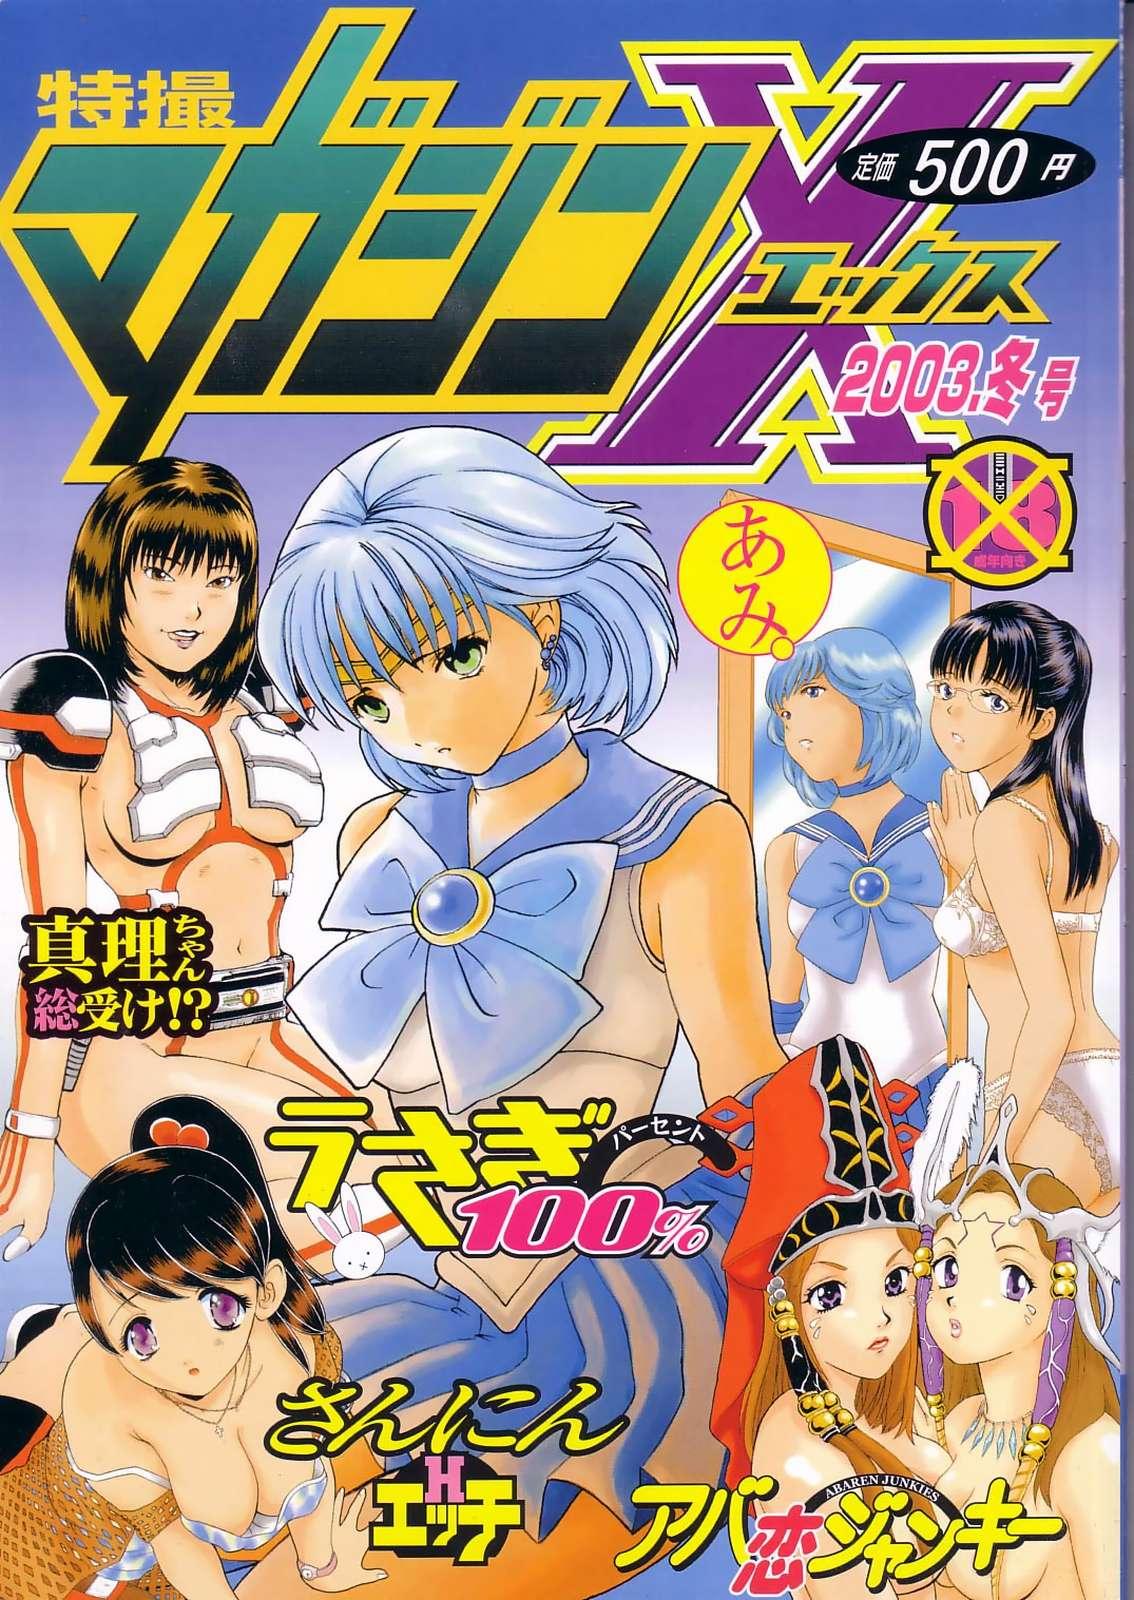 Porno Tokusatsu Magazine x 2003 Fuyu Gou - Sailor moon Ichigo 100 Police - Picture 1